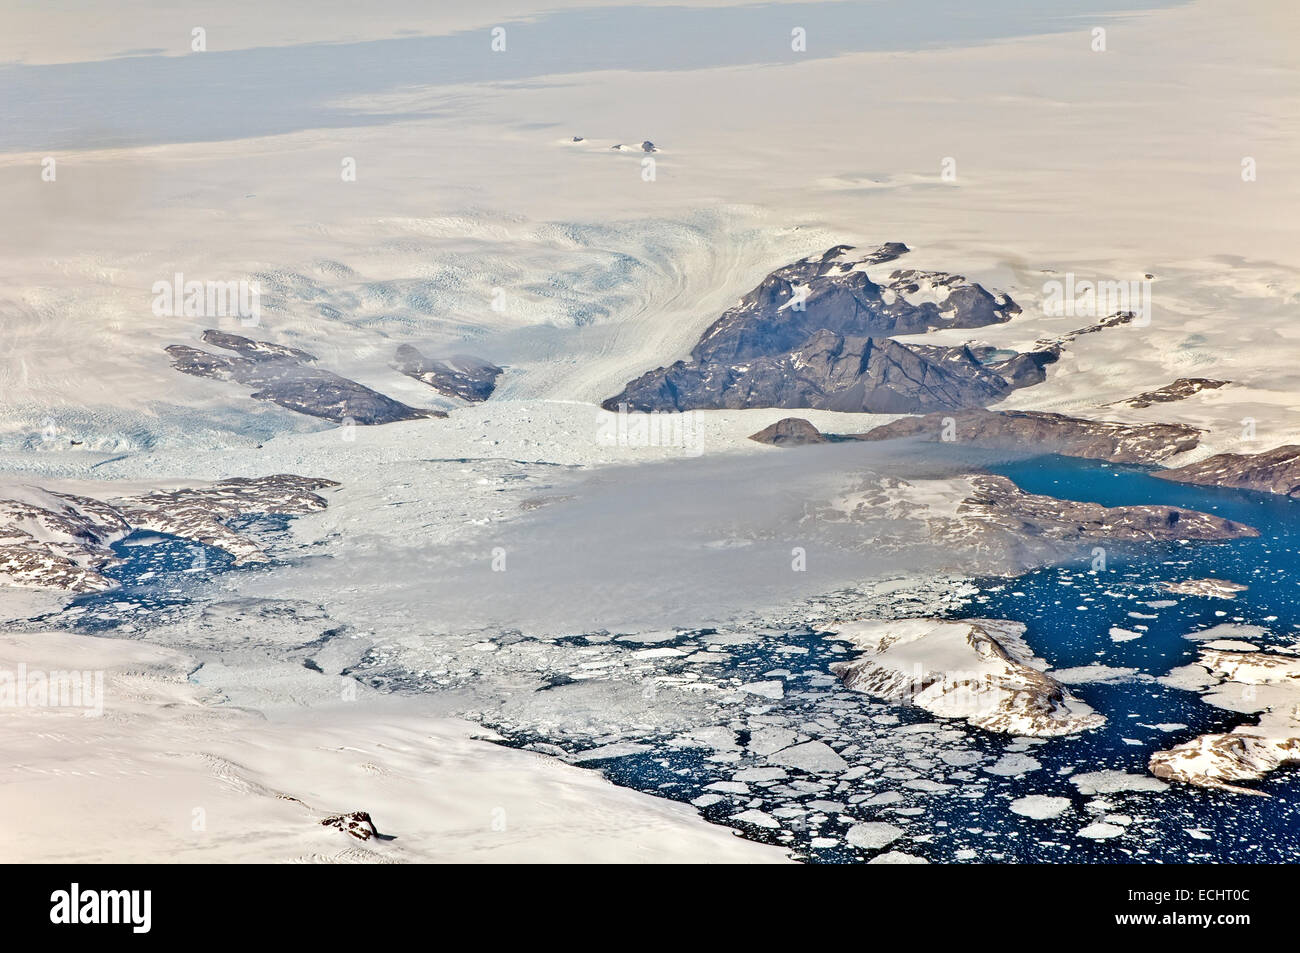 Paysage gelé du Groenland, vue aérienne Banque D'Images